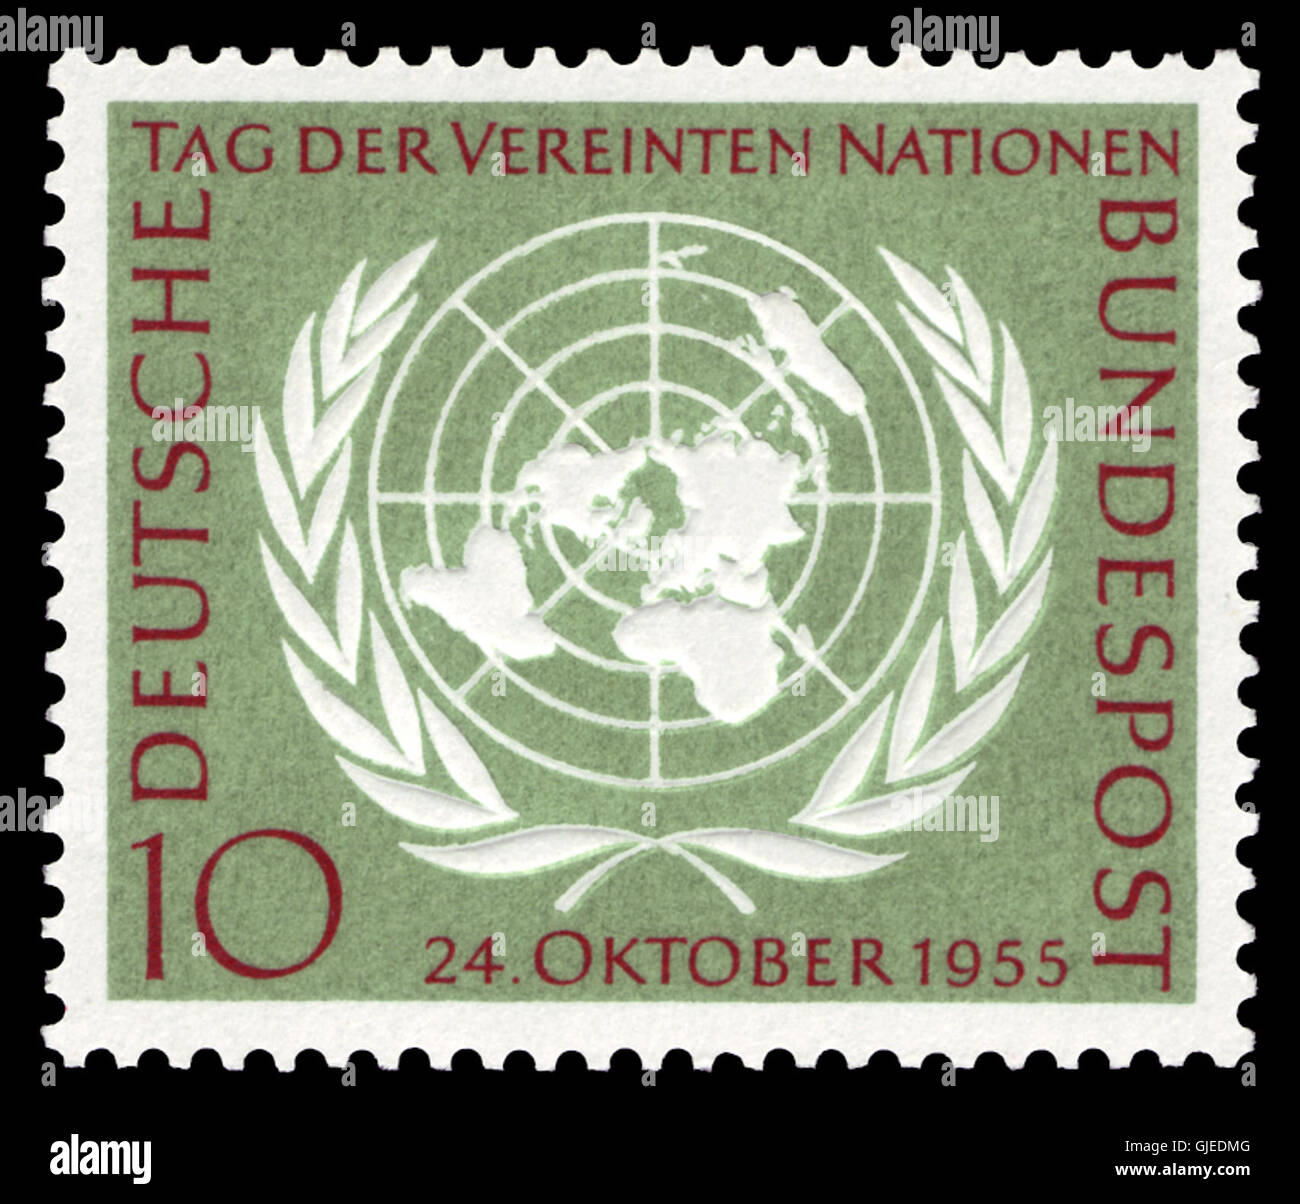 El DBP 1955 221 Vereinte Nationen Foto de stock